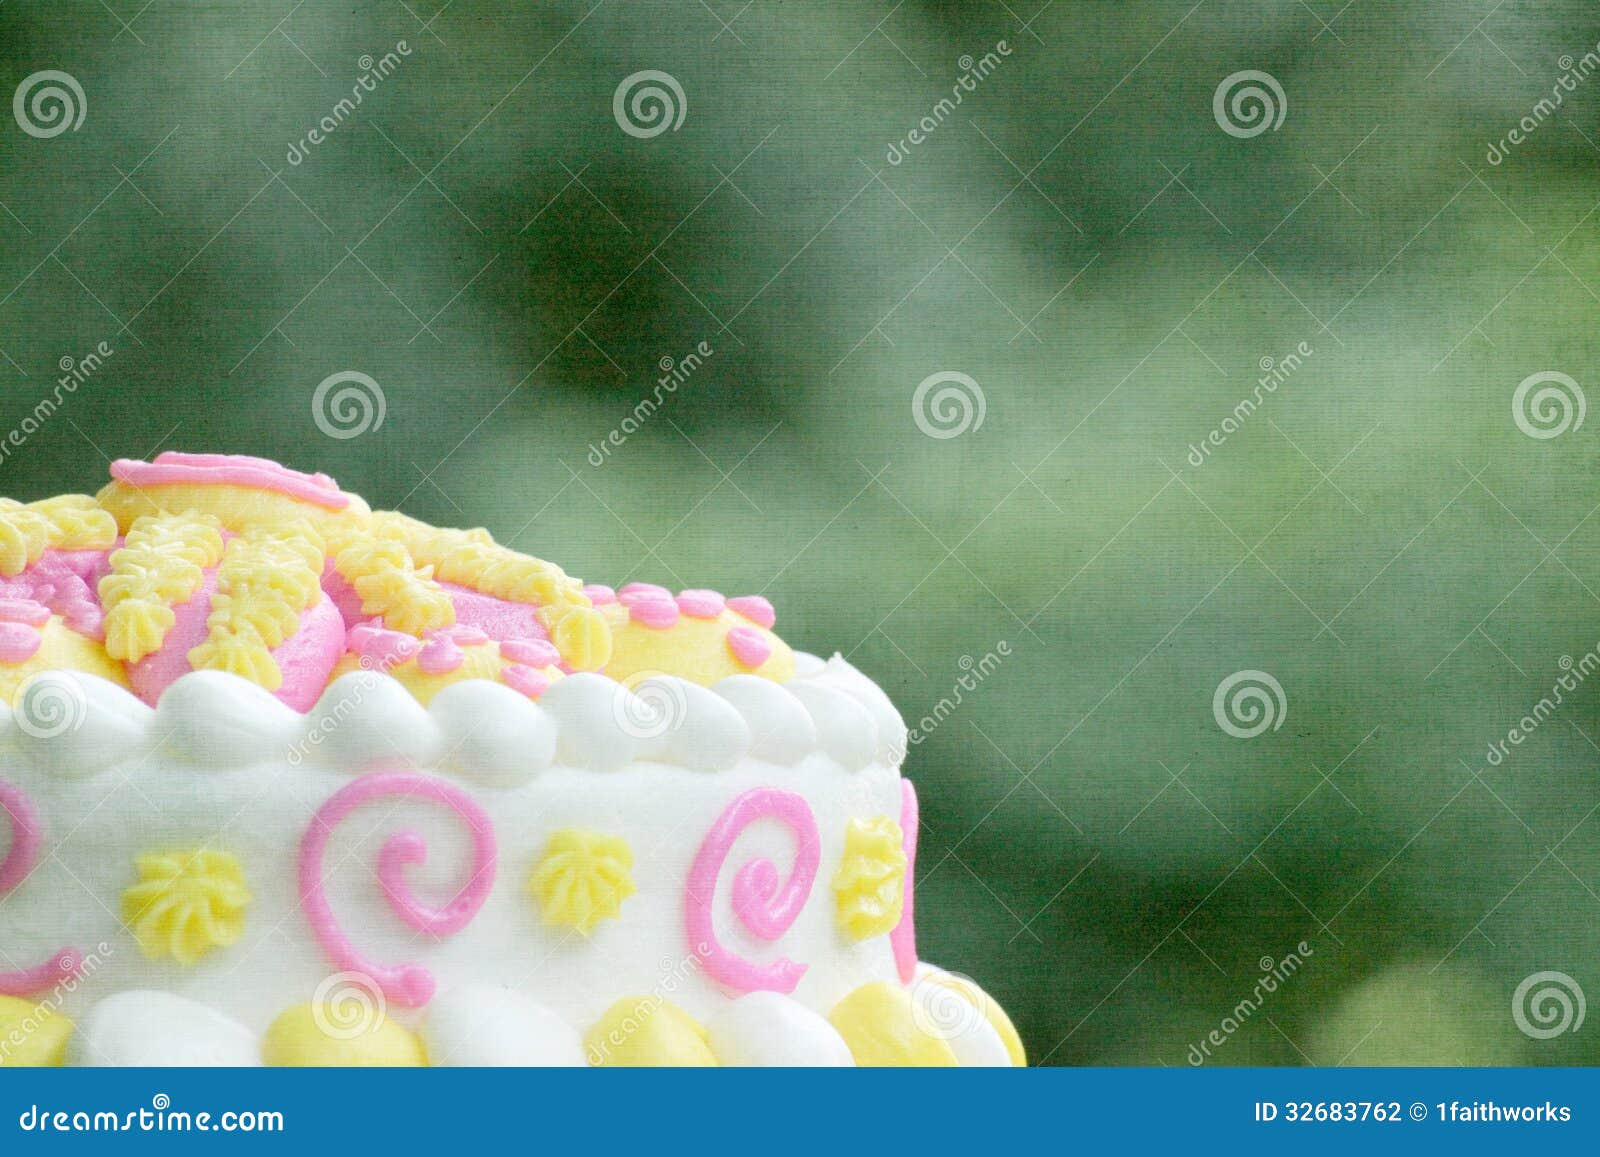 Birthday Cake Background Stock Photography - Image: 32683762